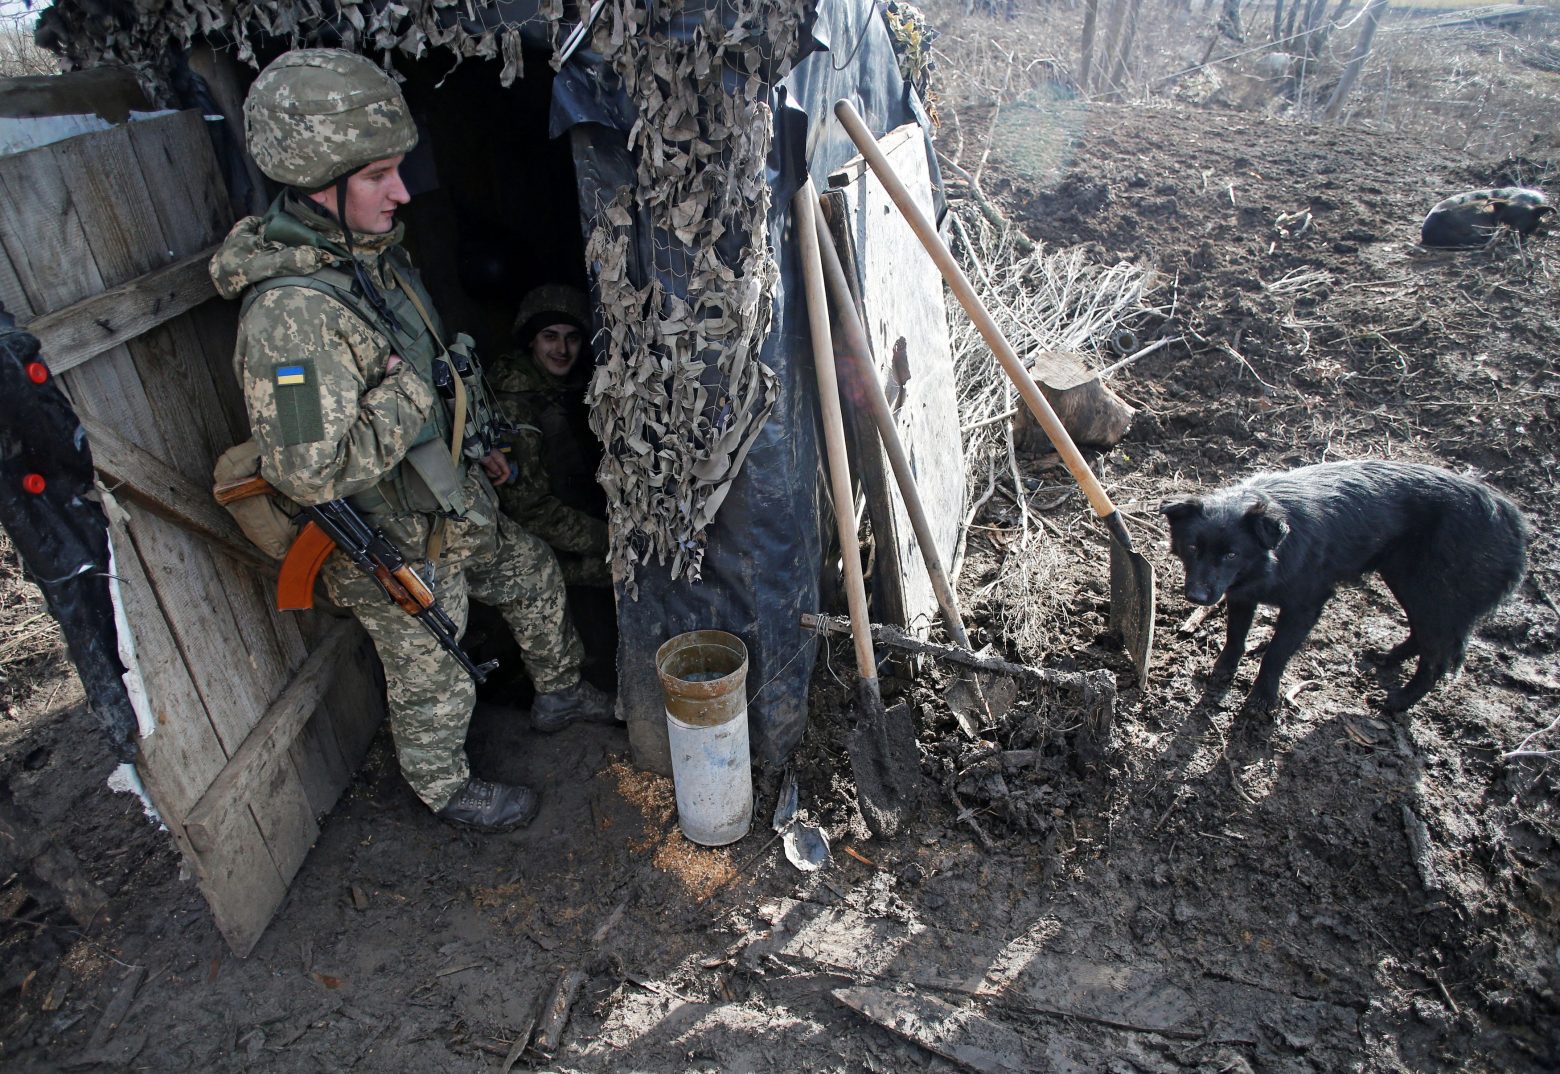 Ουκρανία: Τύμπανα πολέμου ξανά, με επίκεντρο το Ντονμπάς - Για ραγδαία κλιμάκωση προειδοποιεί η Δύση